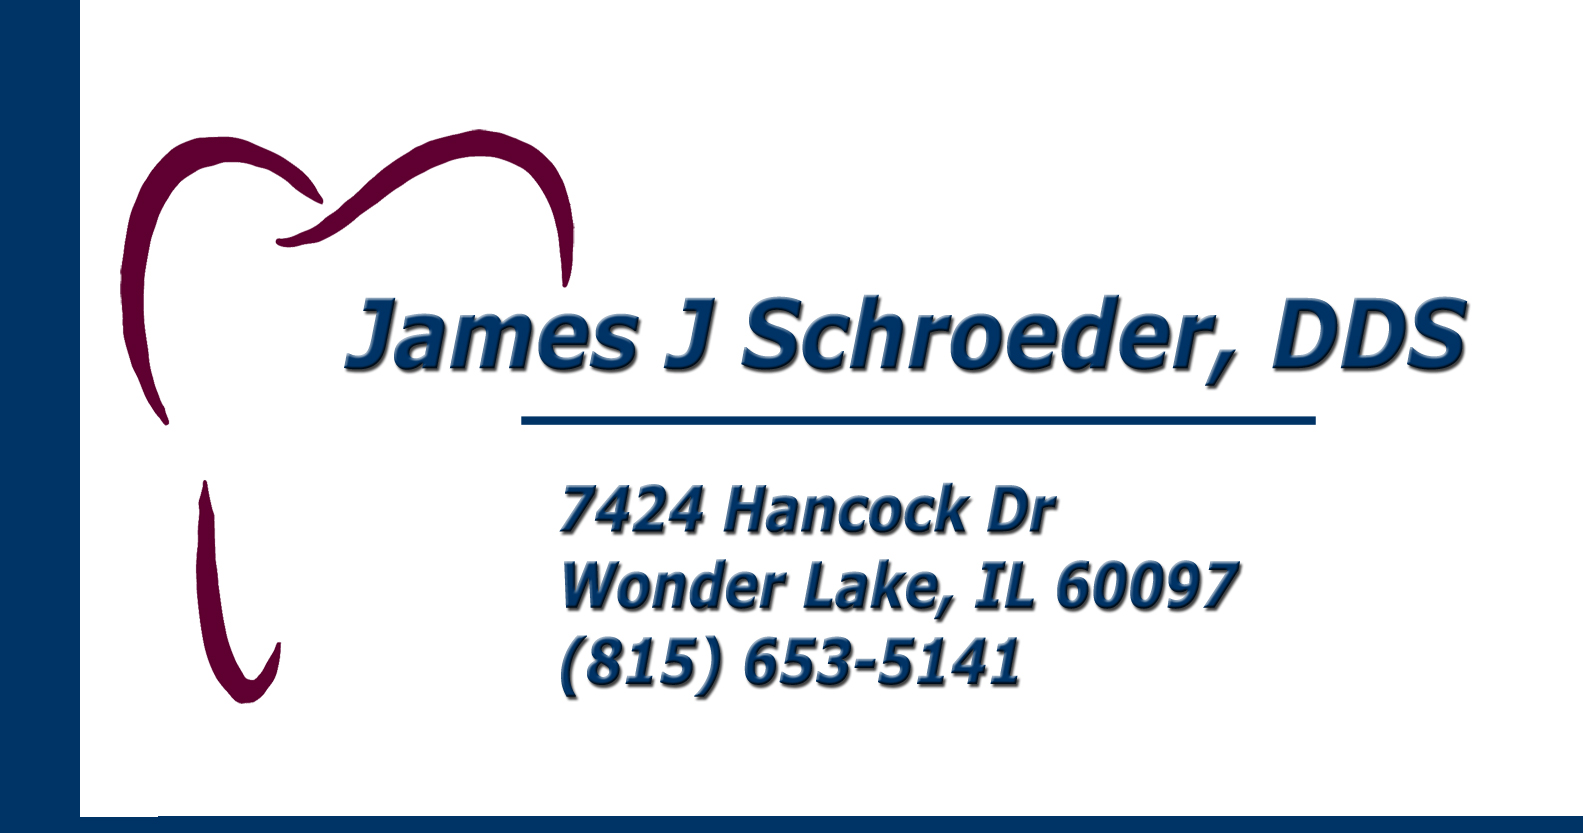 James J Schroeder, DDS